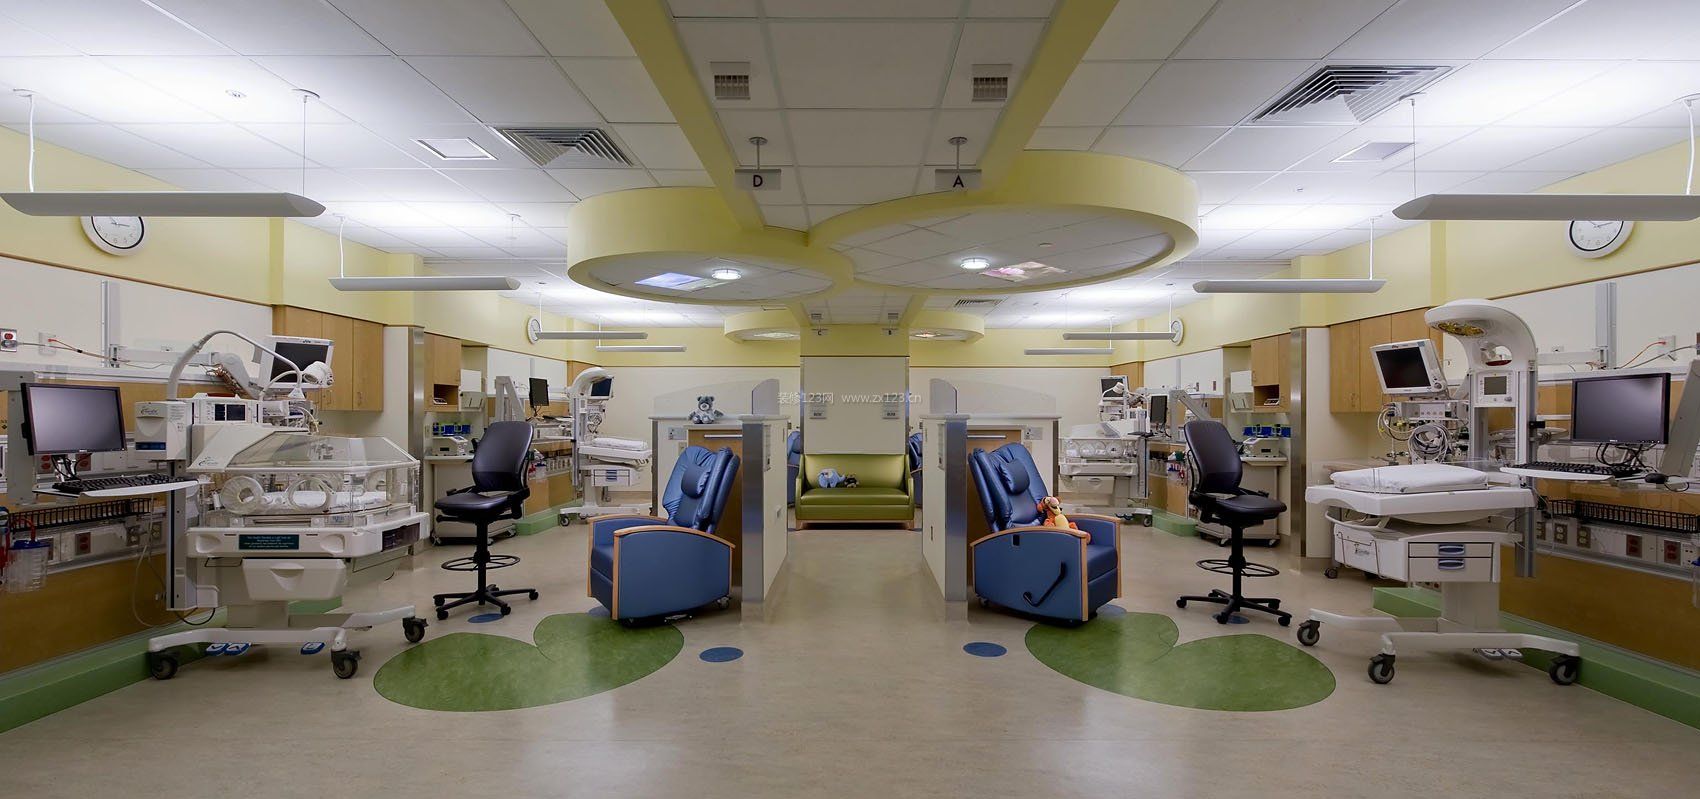 现代医院室内地板装修效果图片大全